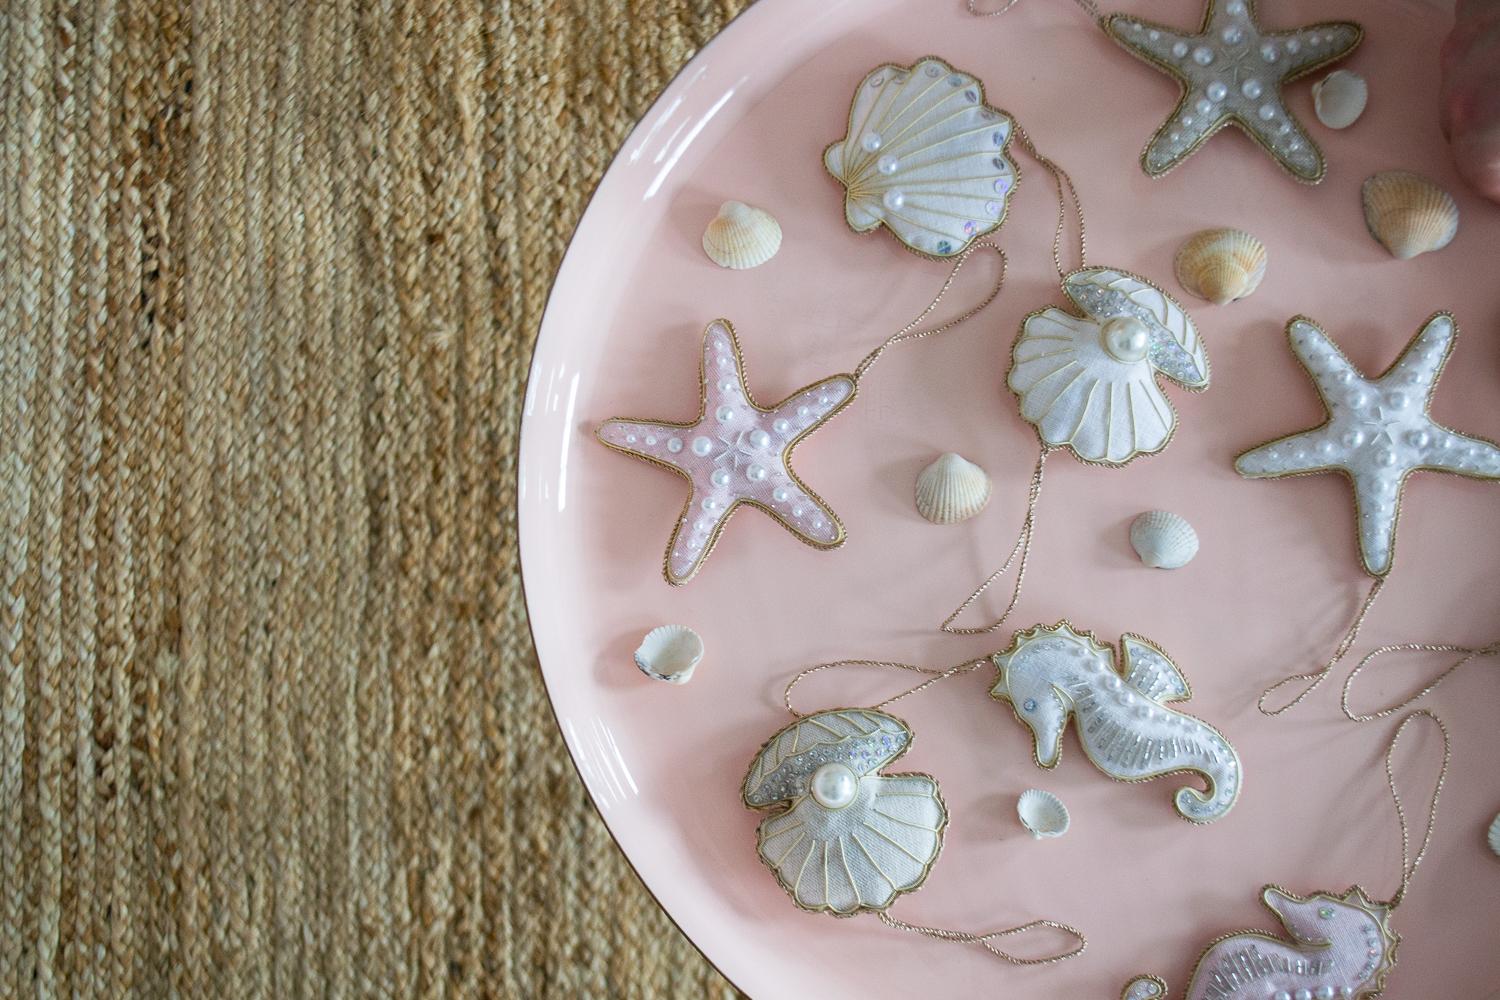 Lot de 9 décorations en lin irlandais artisanal édition limitée hippocampe étoile de mer coquillage en rose pastel par Katie Larmour 

Il s'agit d'un luxueux coffret d'ornements décoratifs fabriqués artisanalement avec de l'authentique lin